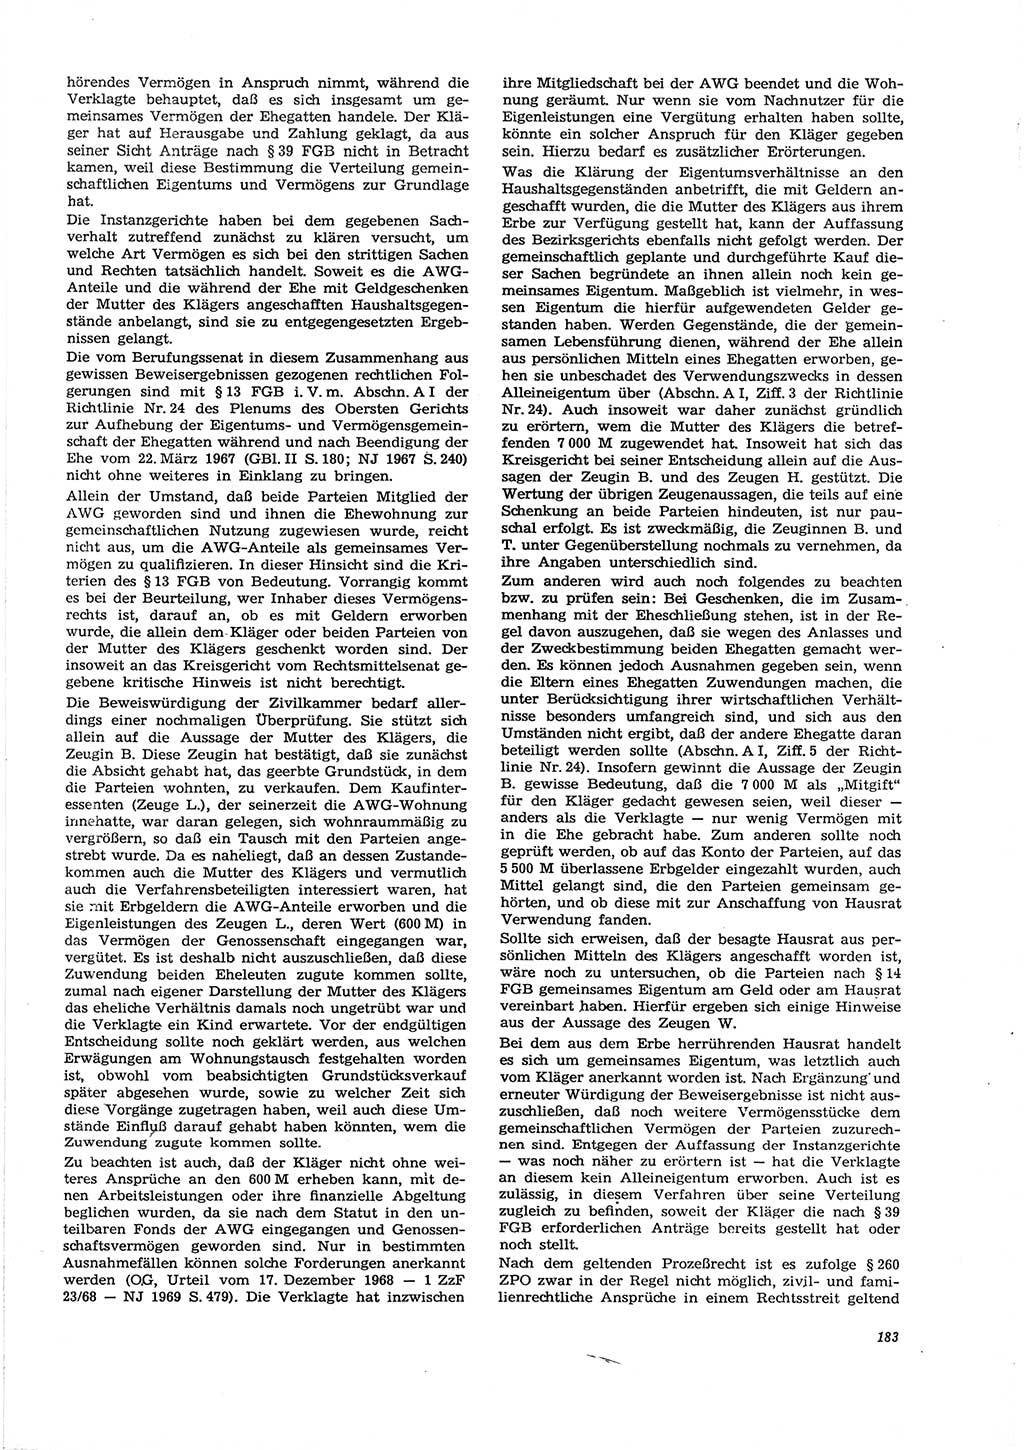 Neue Justiz (NJ), Zeitschrift für Recht und Rechtswissenschaft [Deutsche Demokratische Republik (DDR)], 29. Jahrgang 1975, Seite 183 (NJ DDR 1975, S. 183)